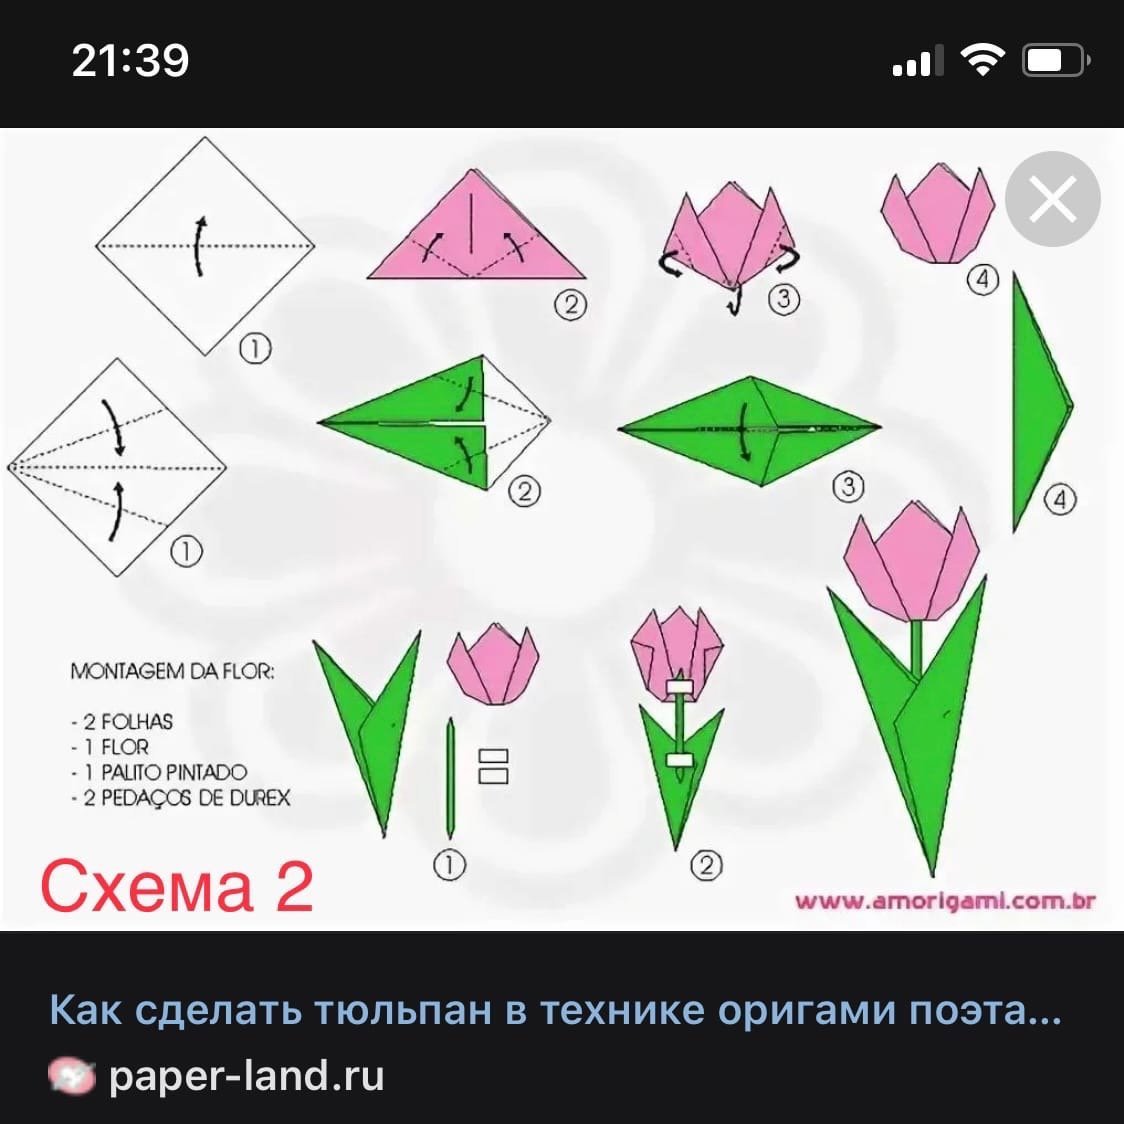 Как сделать цветок без ножниц. Оригами тюльпан пошагово для начинающих. Схема оригами тюльпана для начинающих. Оригами тюльпан схема для детей простая. Оригами тюльпан схема для начинающих пошагово.